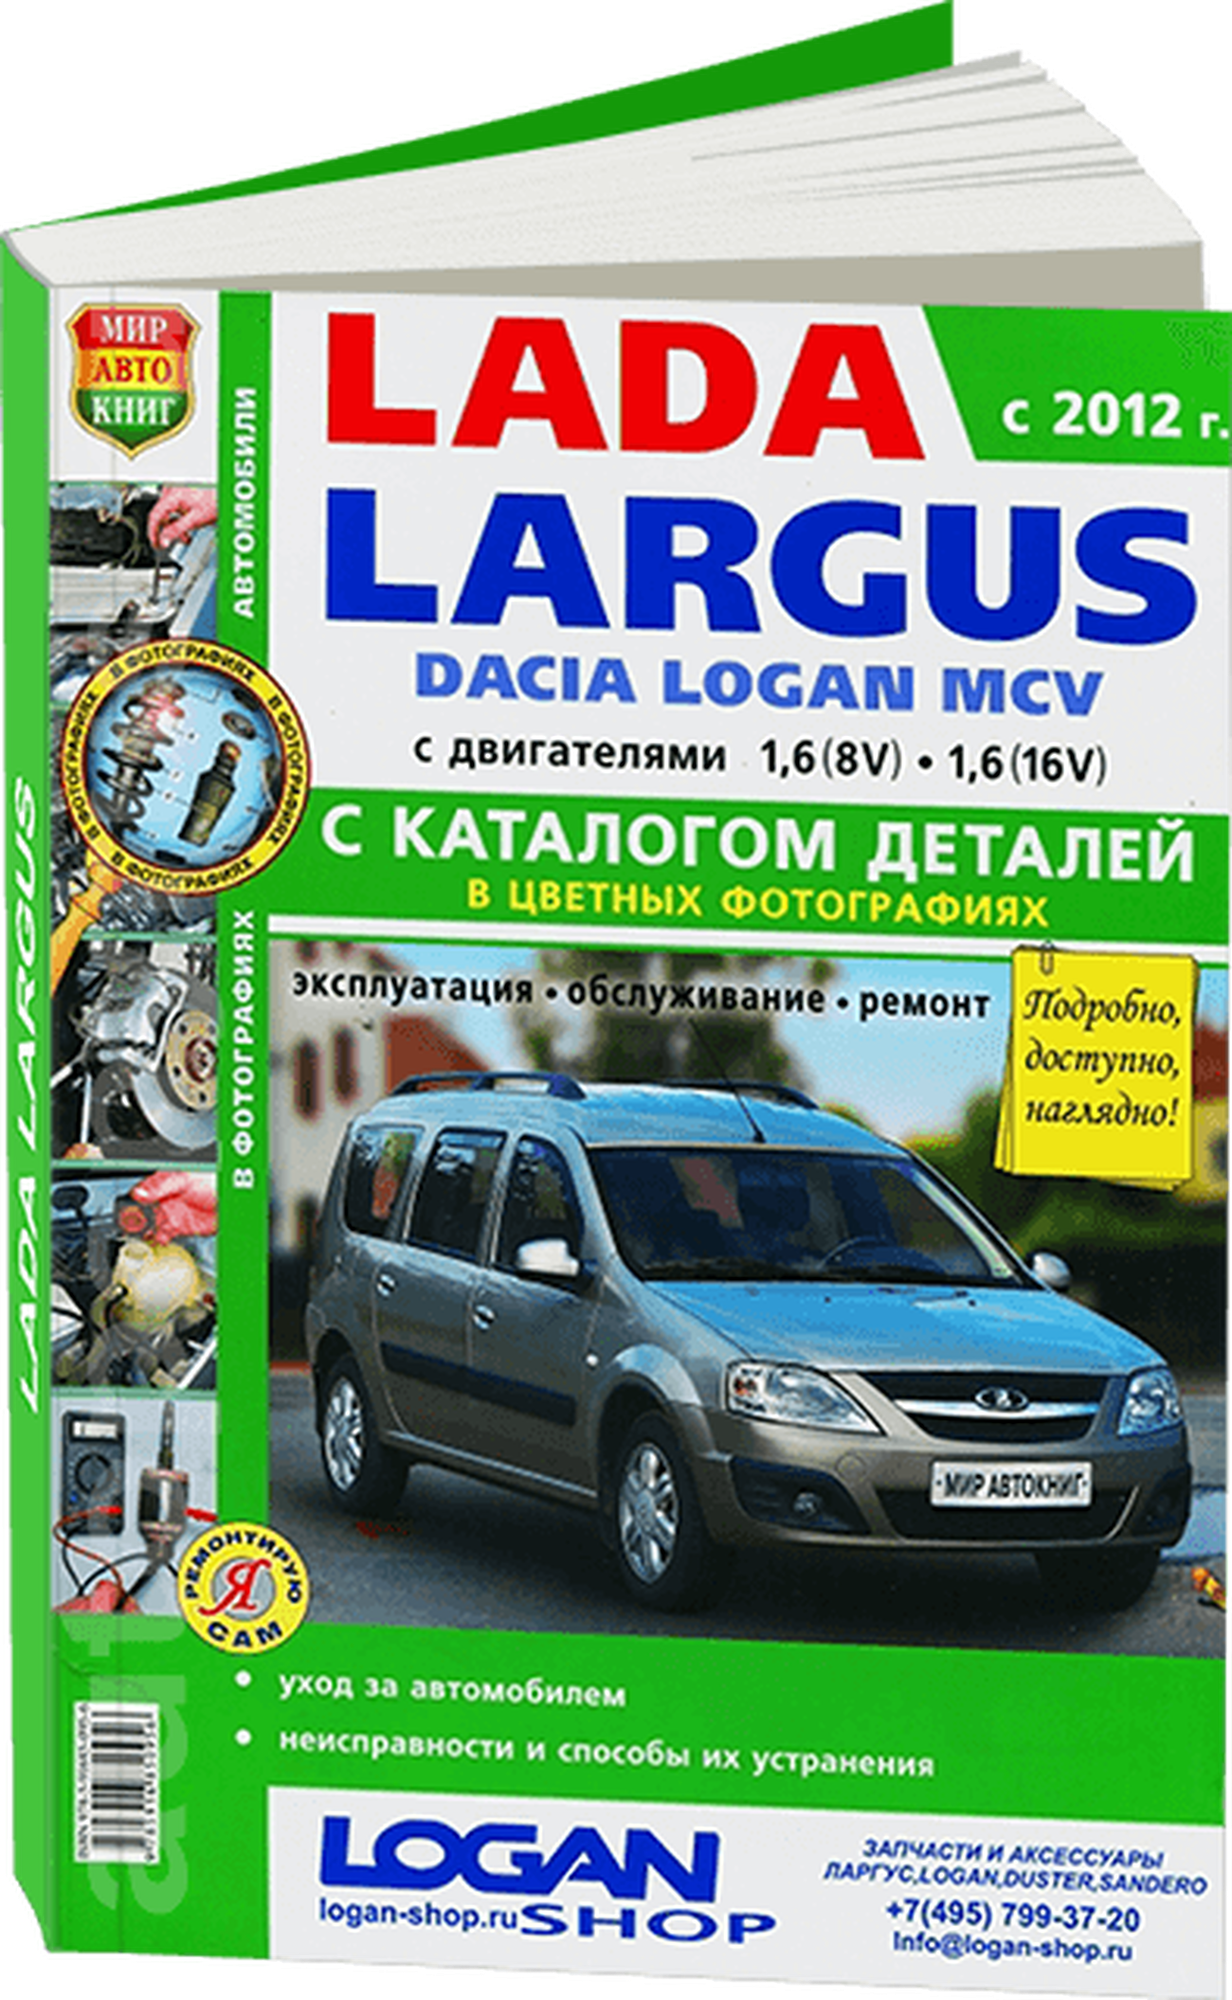 Каталог деталей LADA LARGUS (лада ларгус) / DACIA LOGAN MCV бензин с 2012 года выпуска в цветных фотографиях, 978-5-91685-095-6, издательство Мир Автокниг